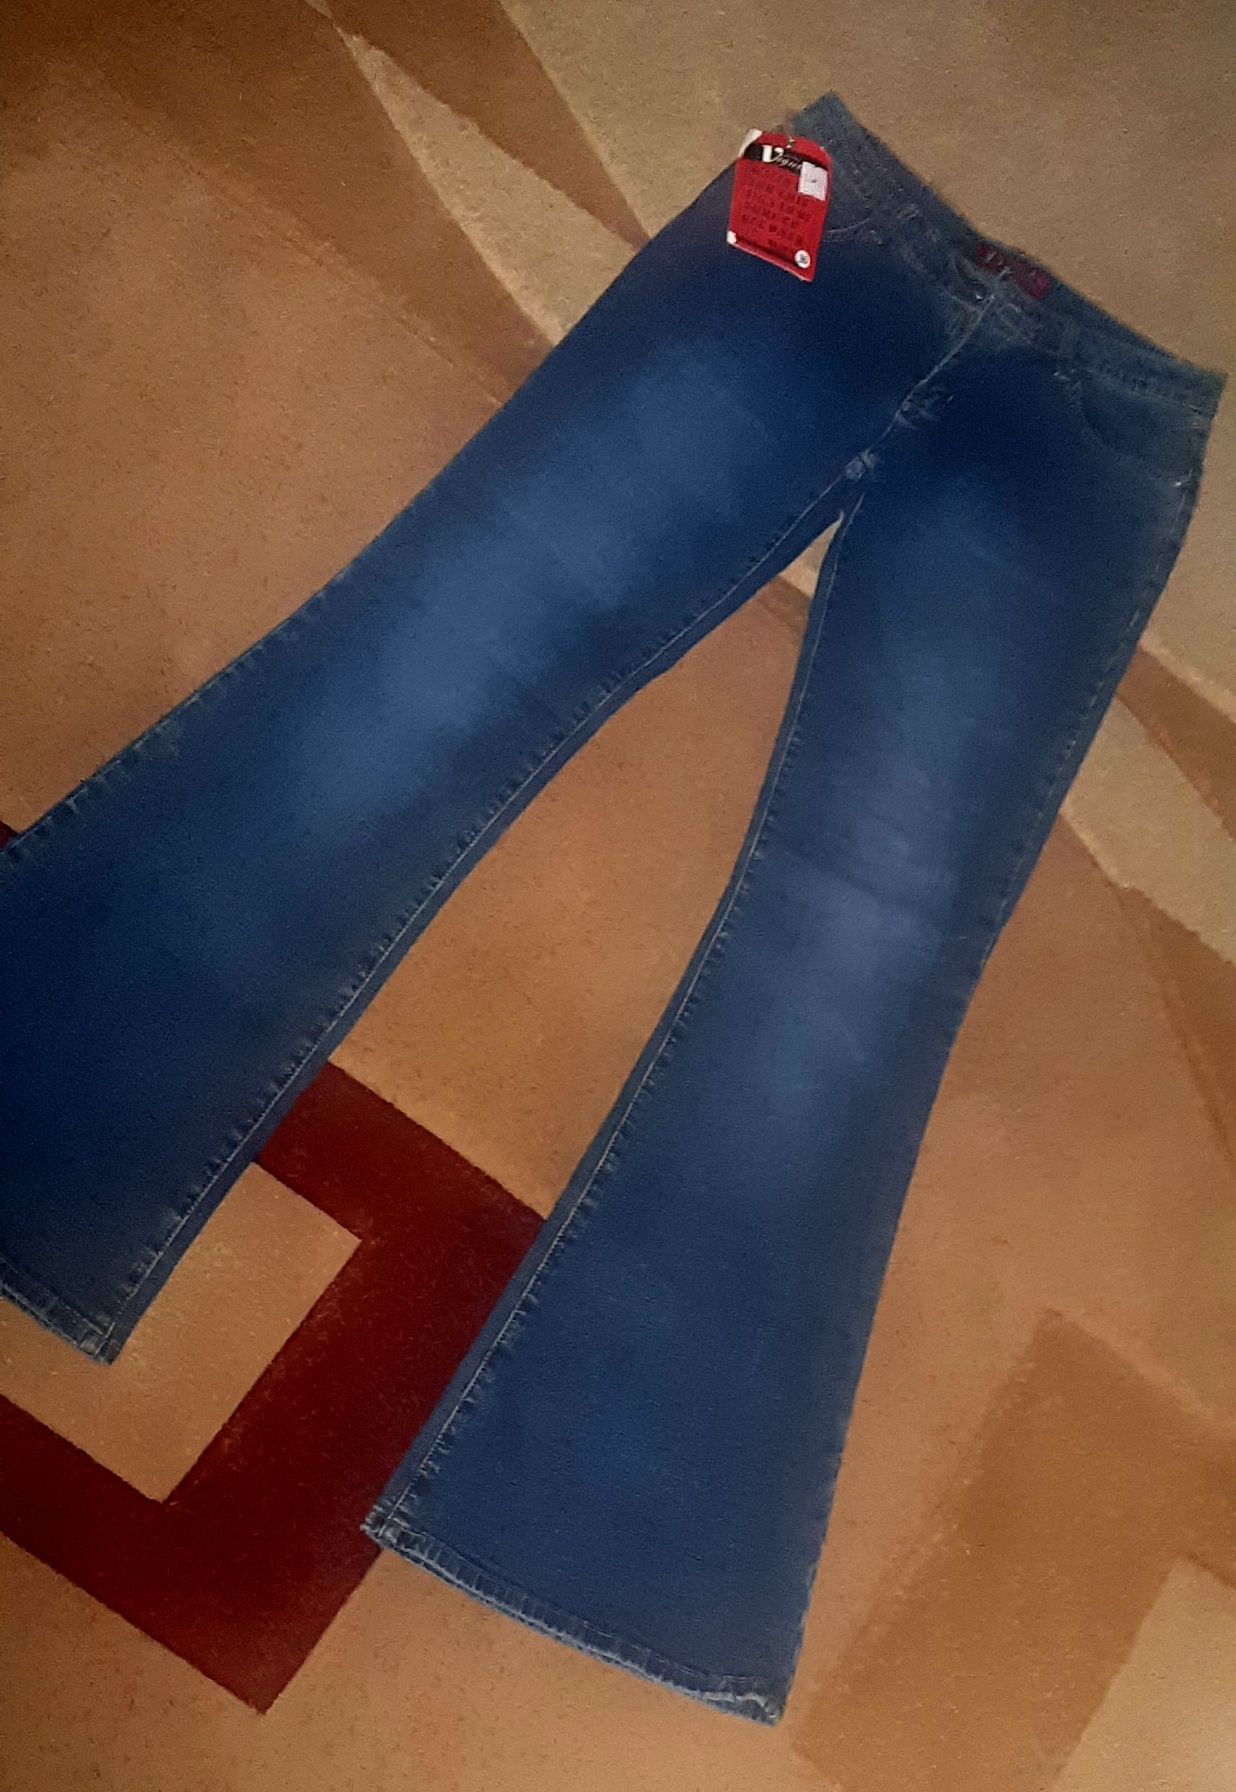 женские джинсы клеш dalaisi 30